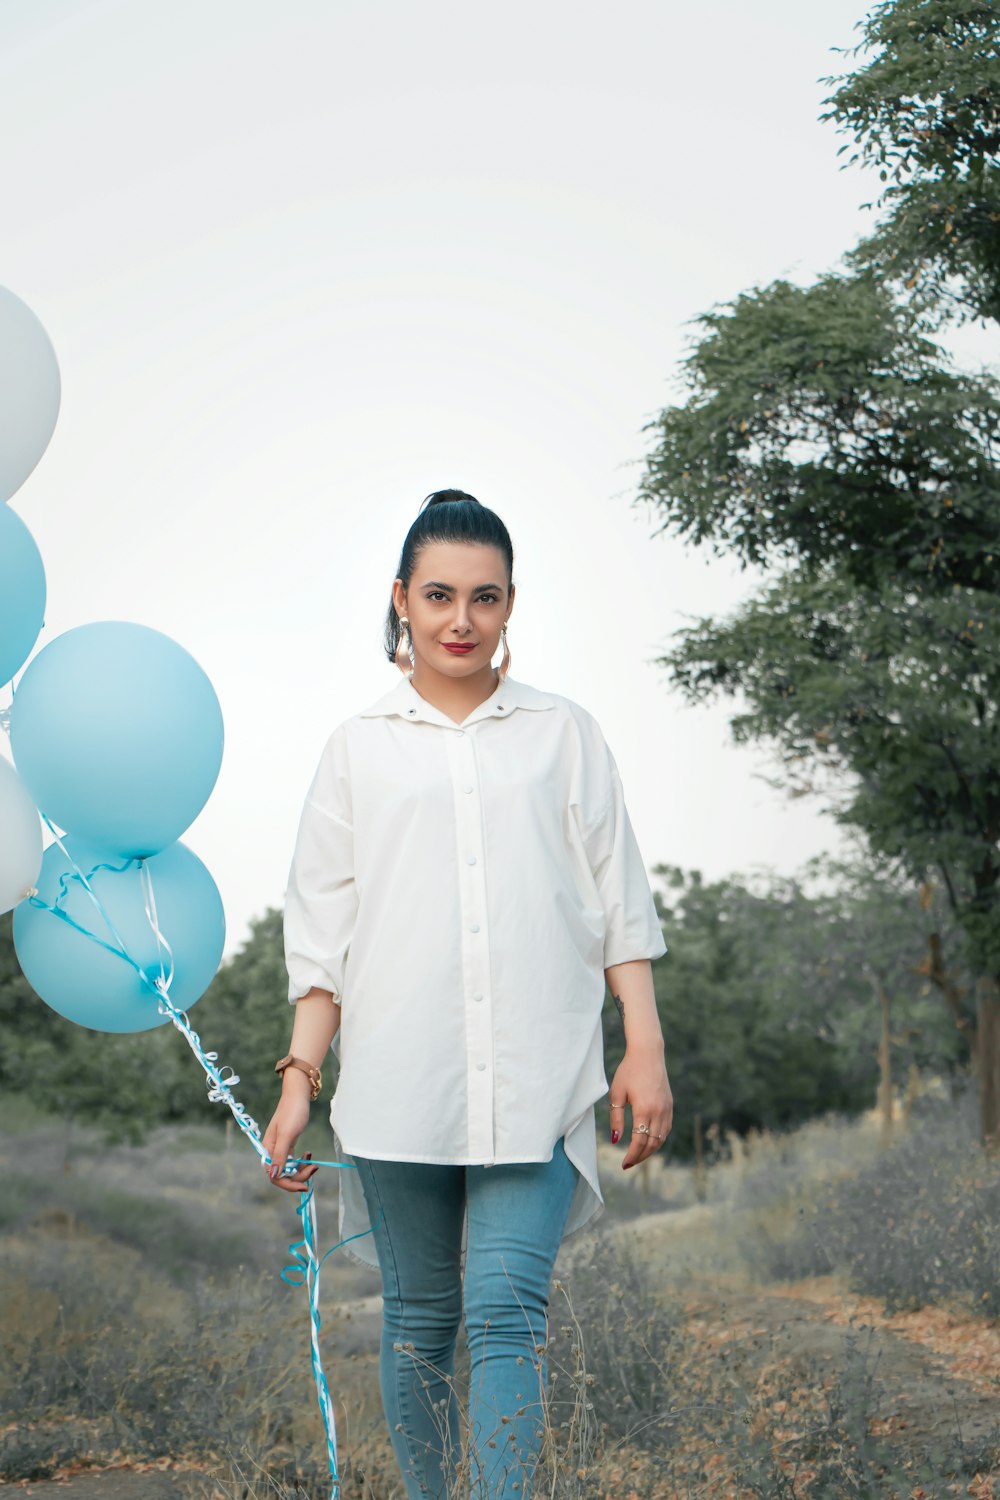 Junge im weißen Hemd mit blauen Luftballons